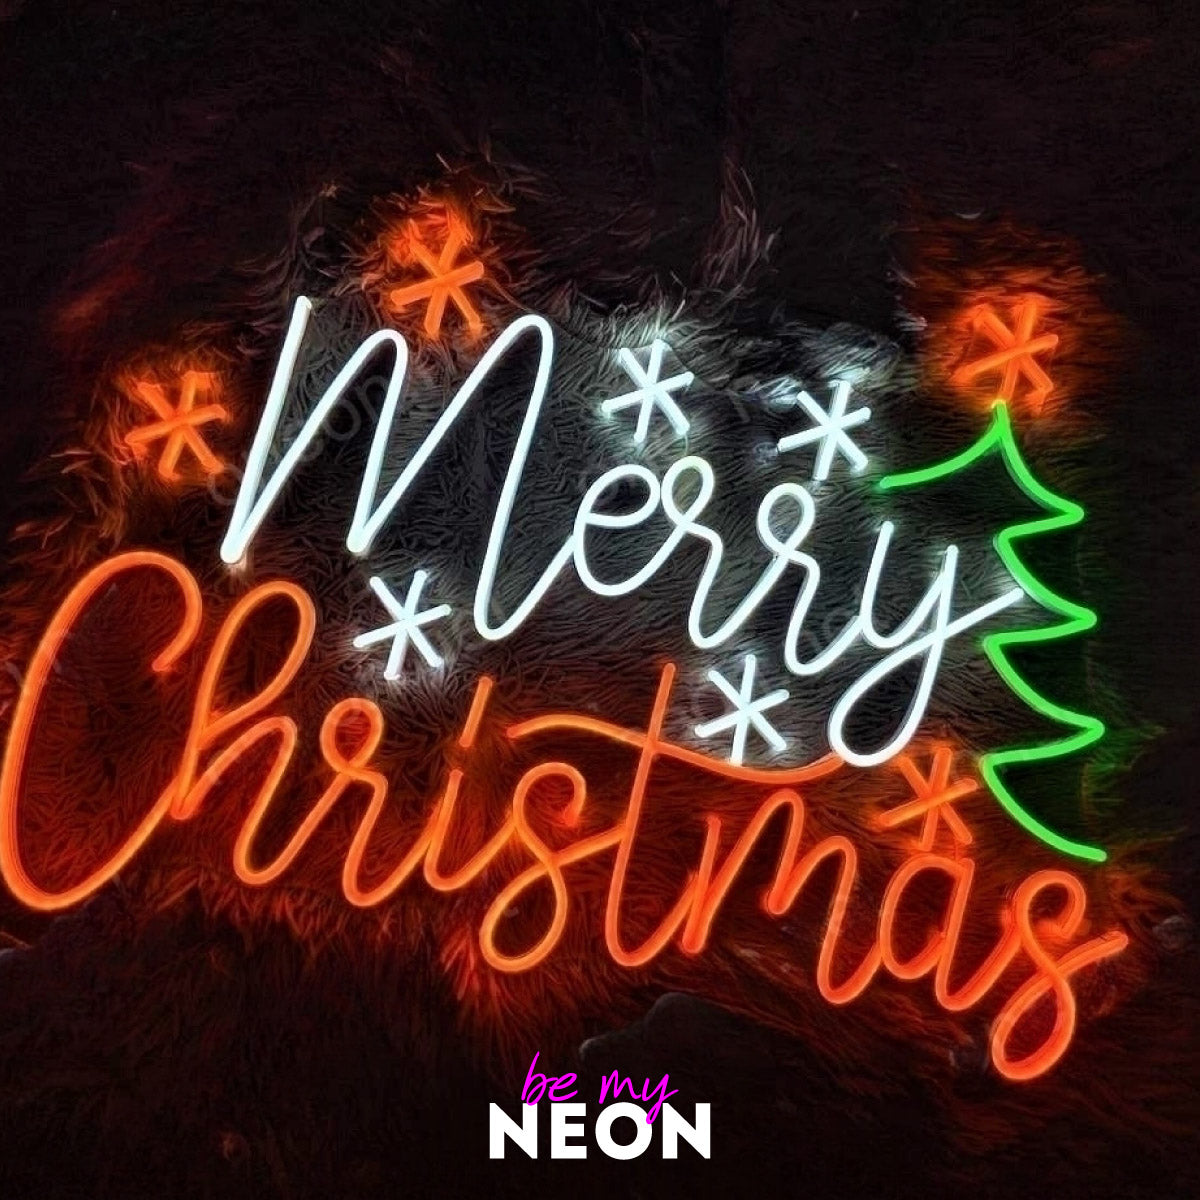 Frohe Weihnachten - Merry Christmas - Neon LED Leuchtmotiv aus Deko